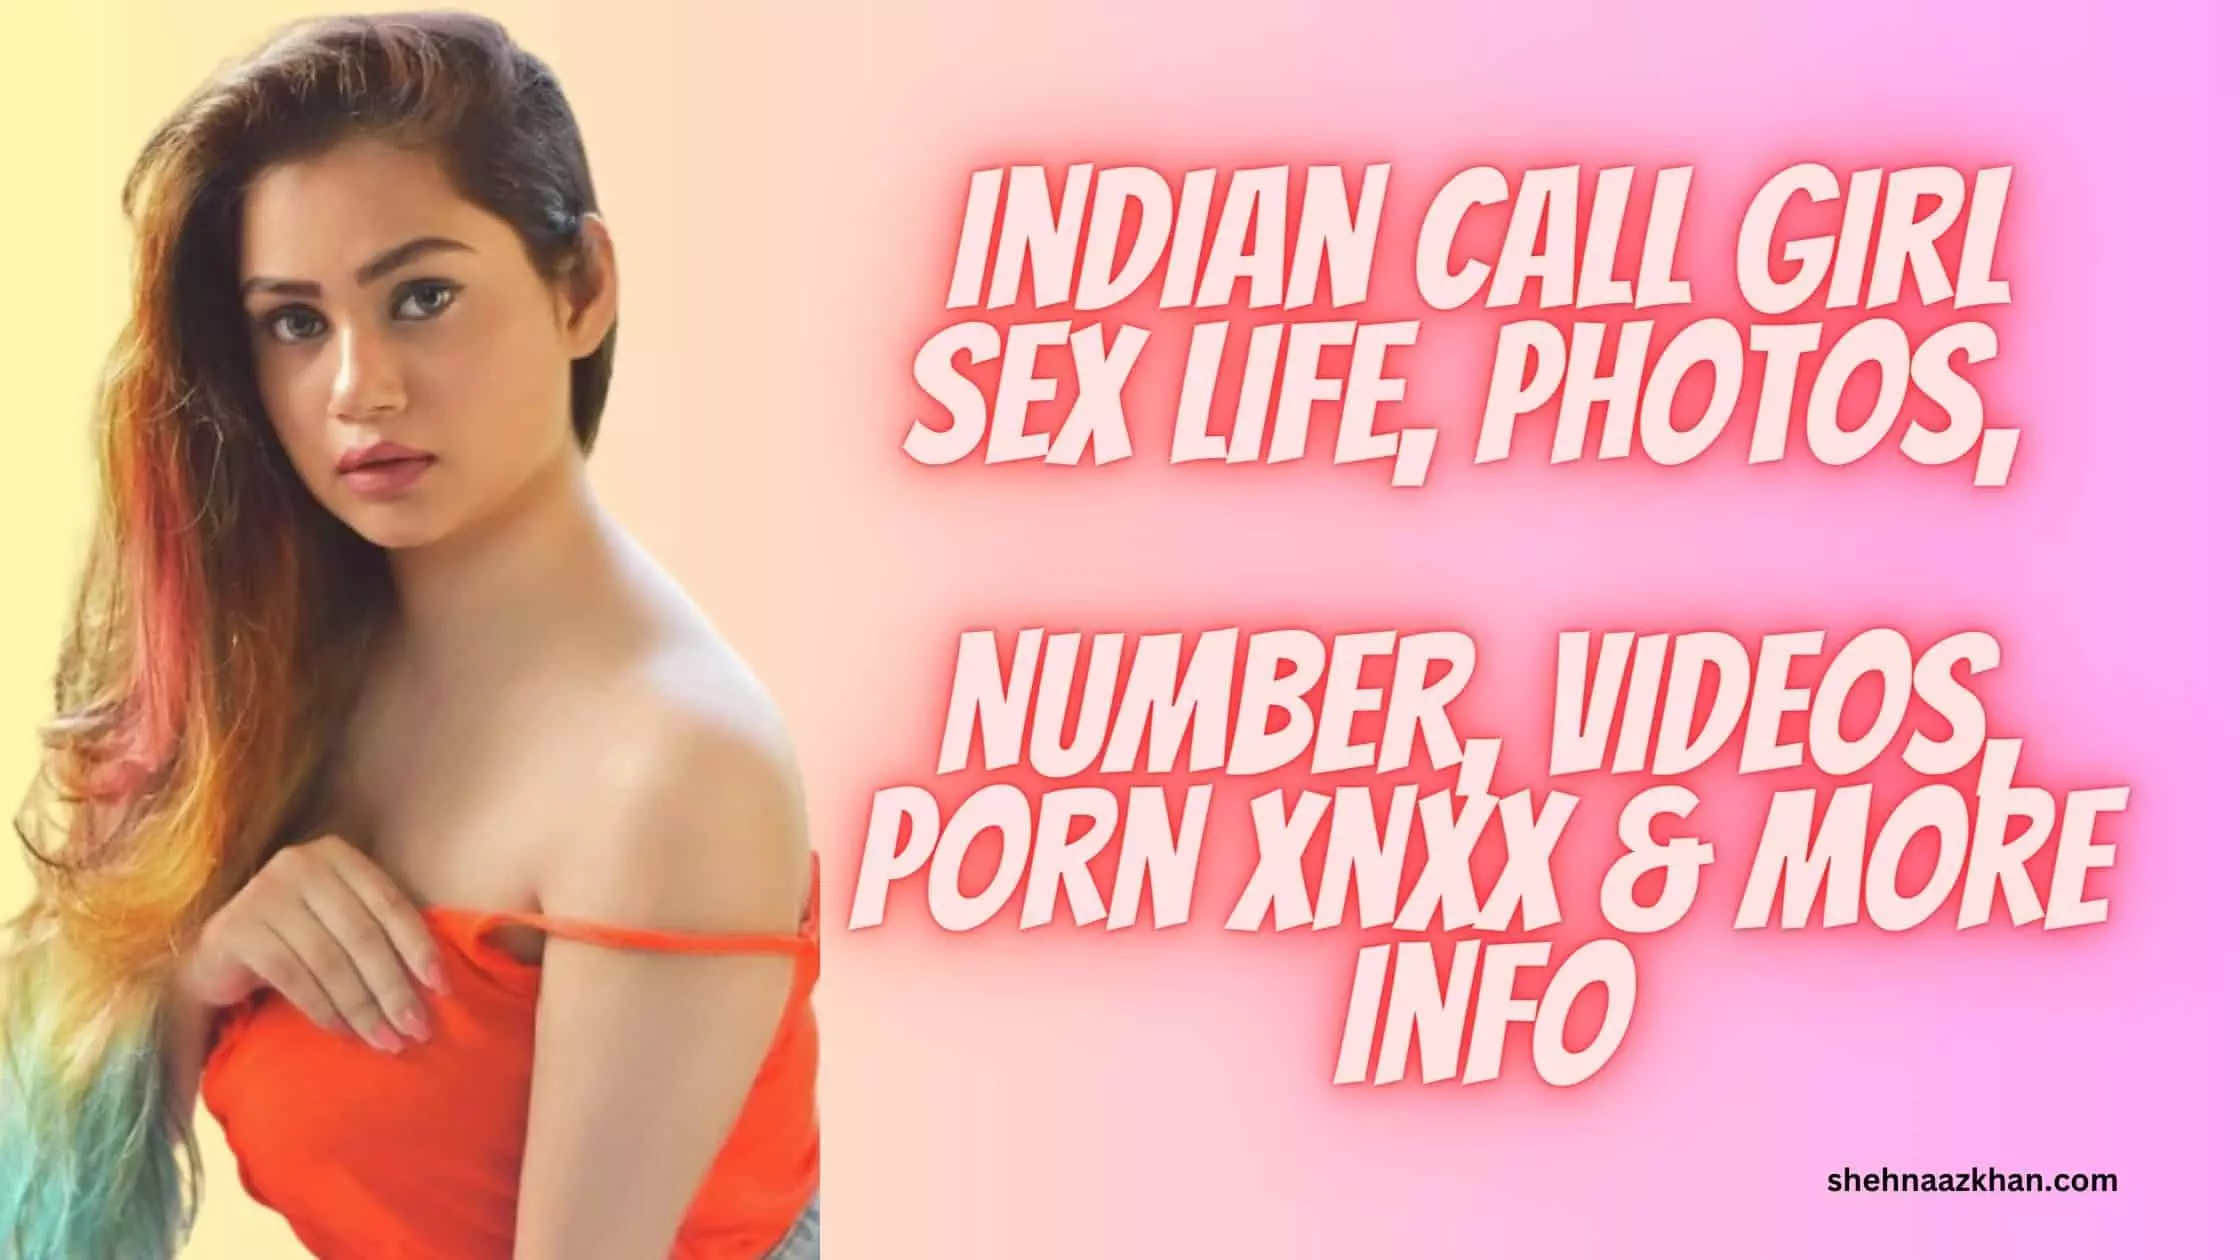 Netaji Sex - Indian Call Girl Sex Life, Hot Photos, Number, Porn Videos